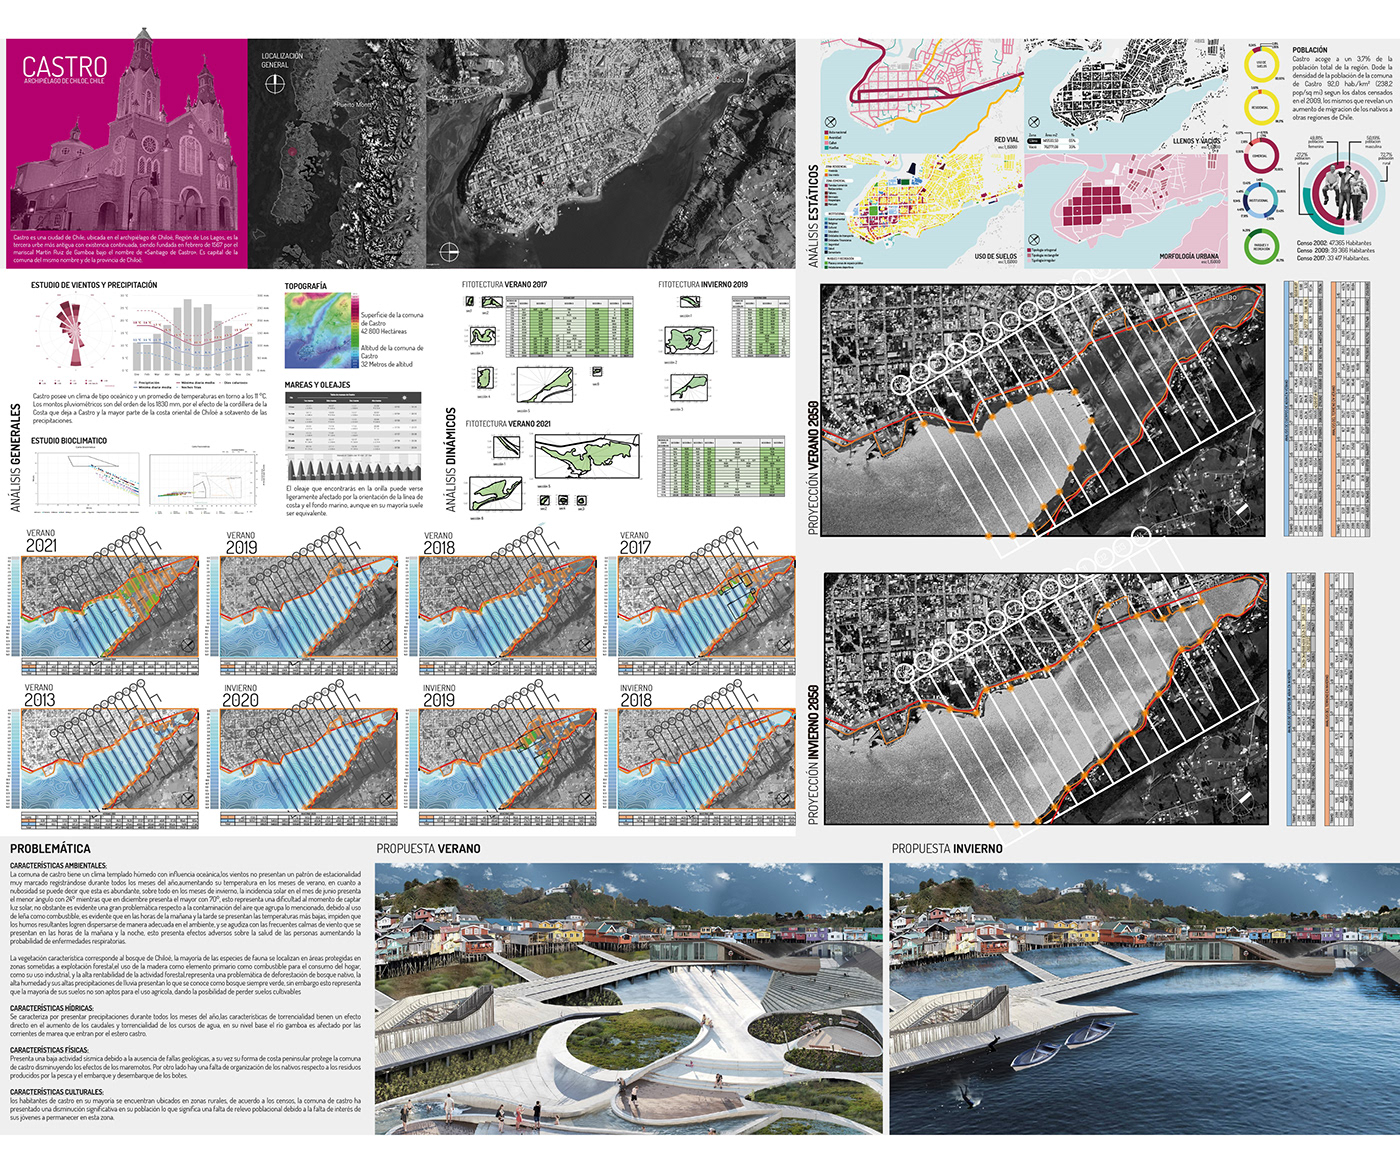 adobe illustrator architecture arquitectura castro chile design diseño parque marítimo